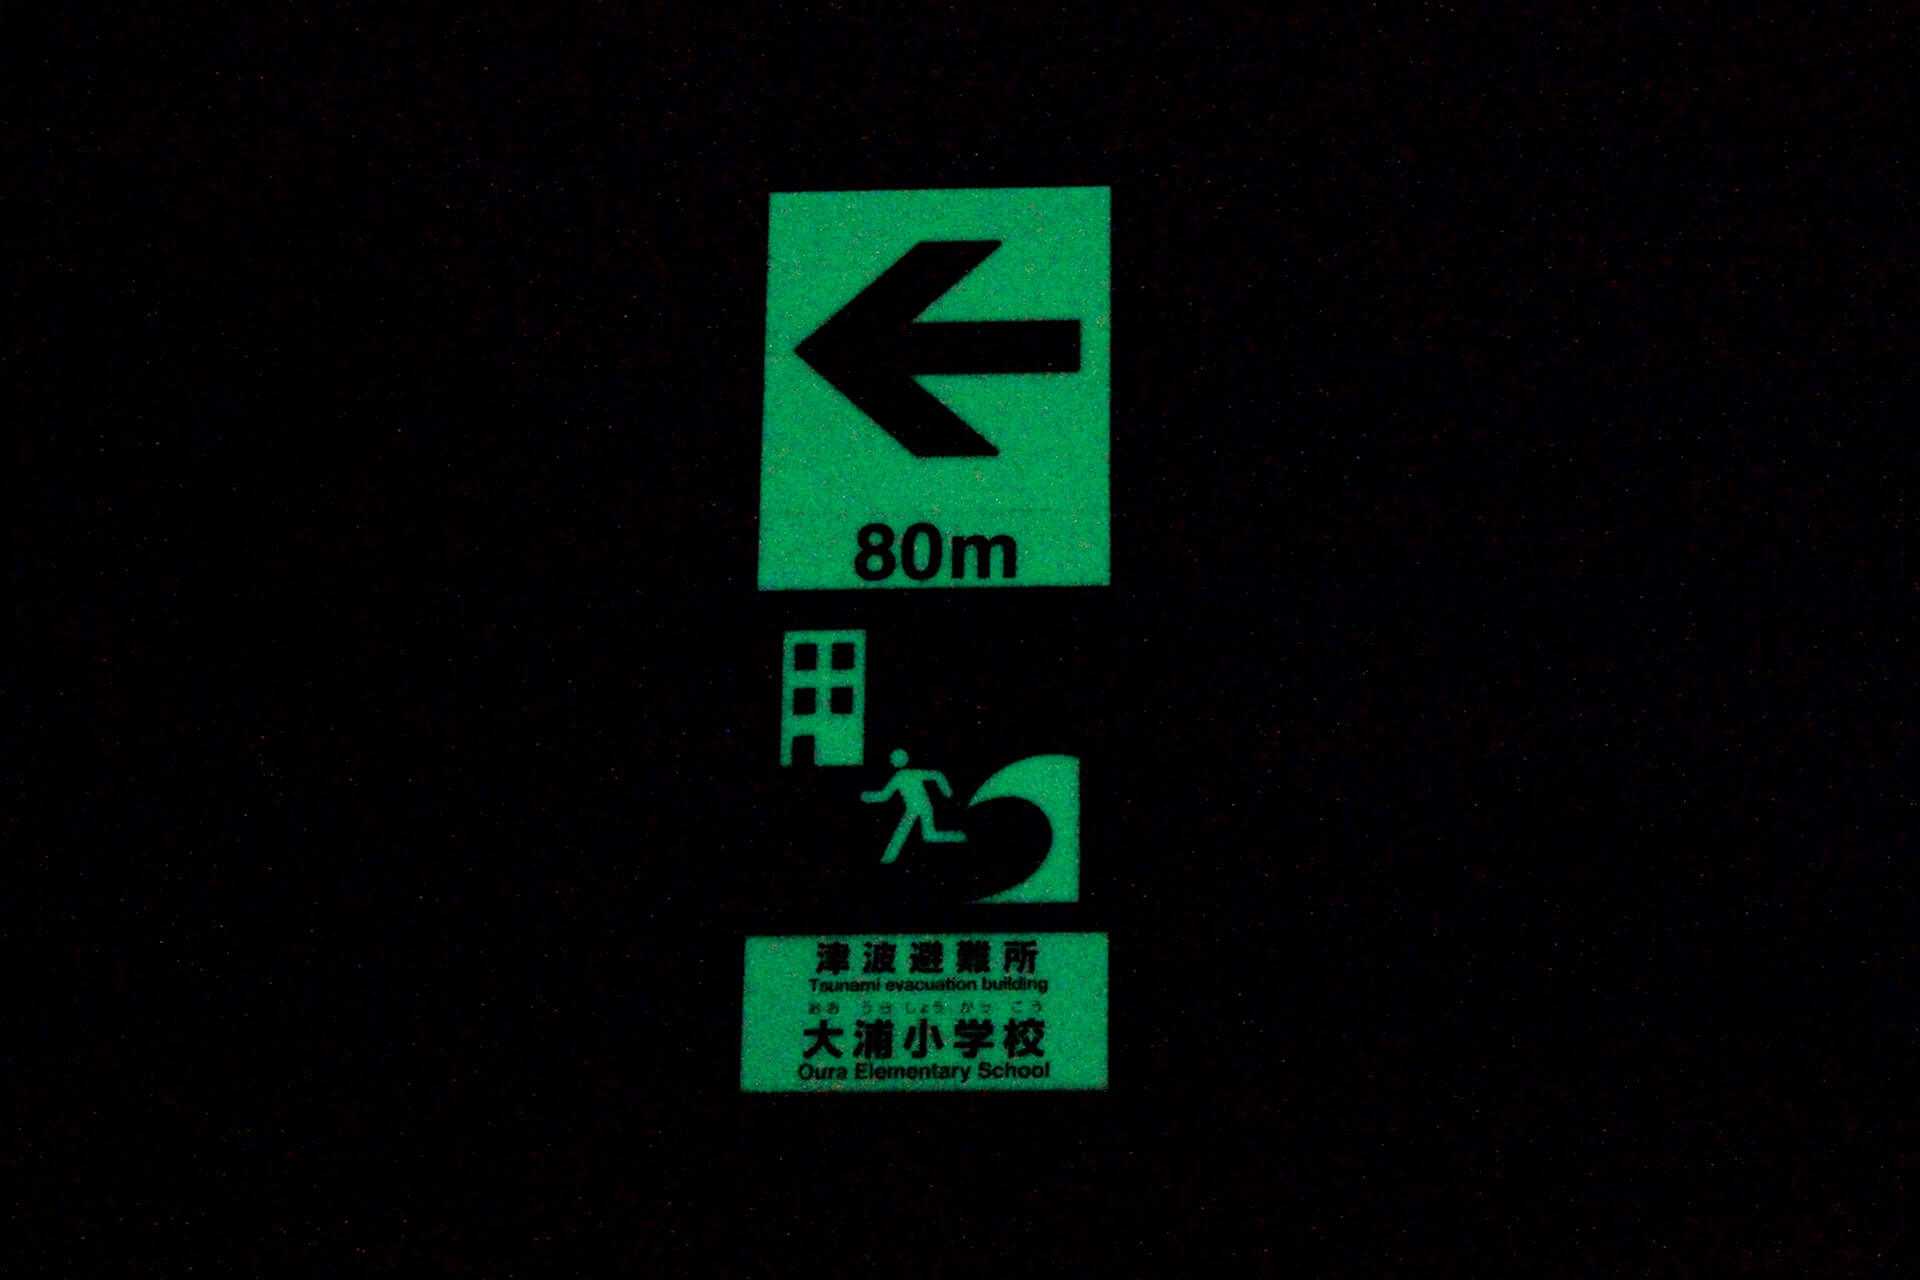 大浦小学校津波避難所へ誘導する左矢印と80メートルが標示された暗視下のハイブリッドストーン アベイラスサインプレート（高輝度蓄光式屋外用案内標示板）